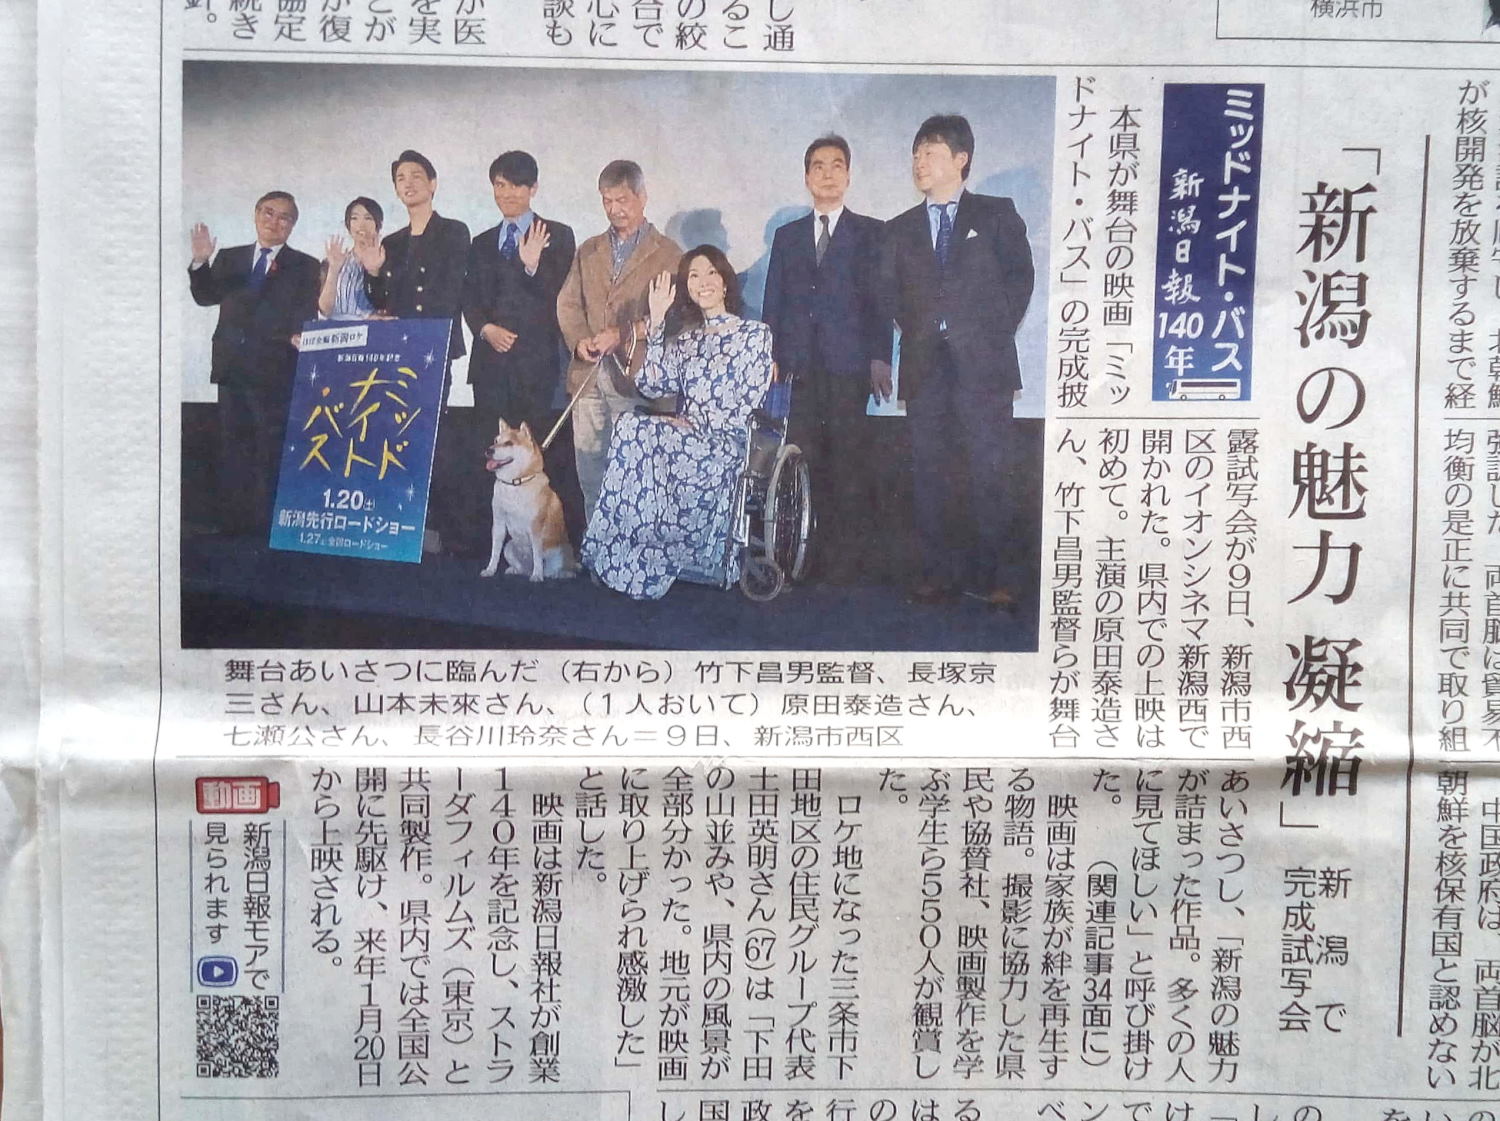 神崎のナナメ読み 映画 ミッドナイト バス 主演 原田泰造さん の完成披露試写会が 新潟 イオン新潟西 で行われました